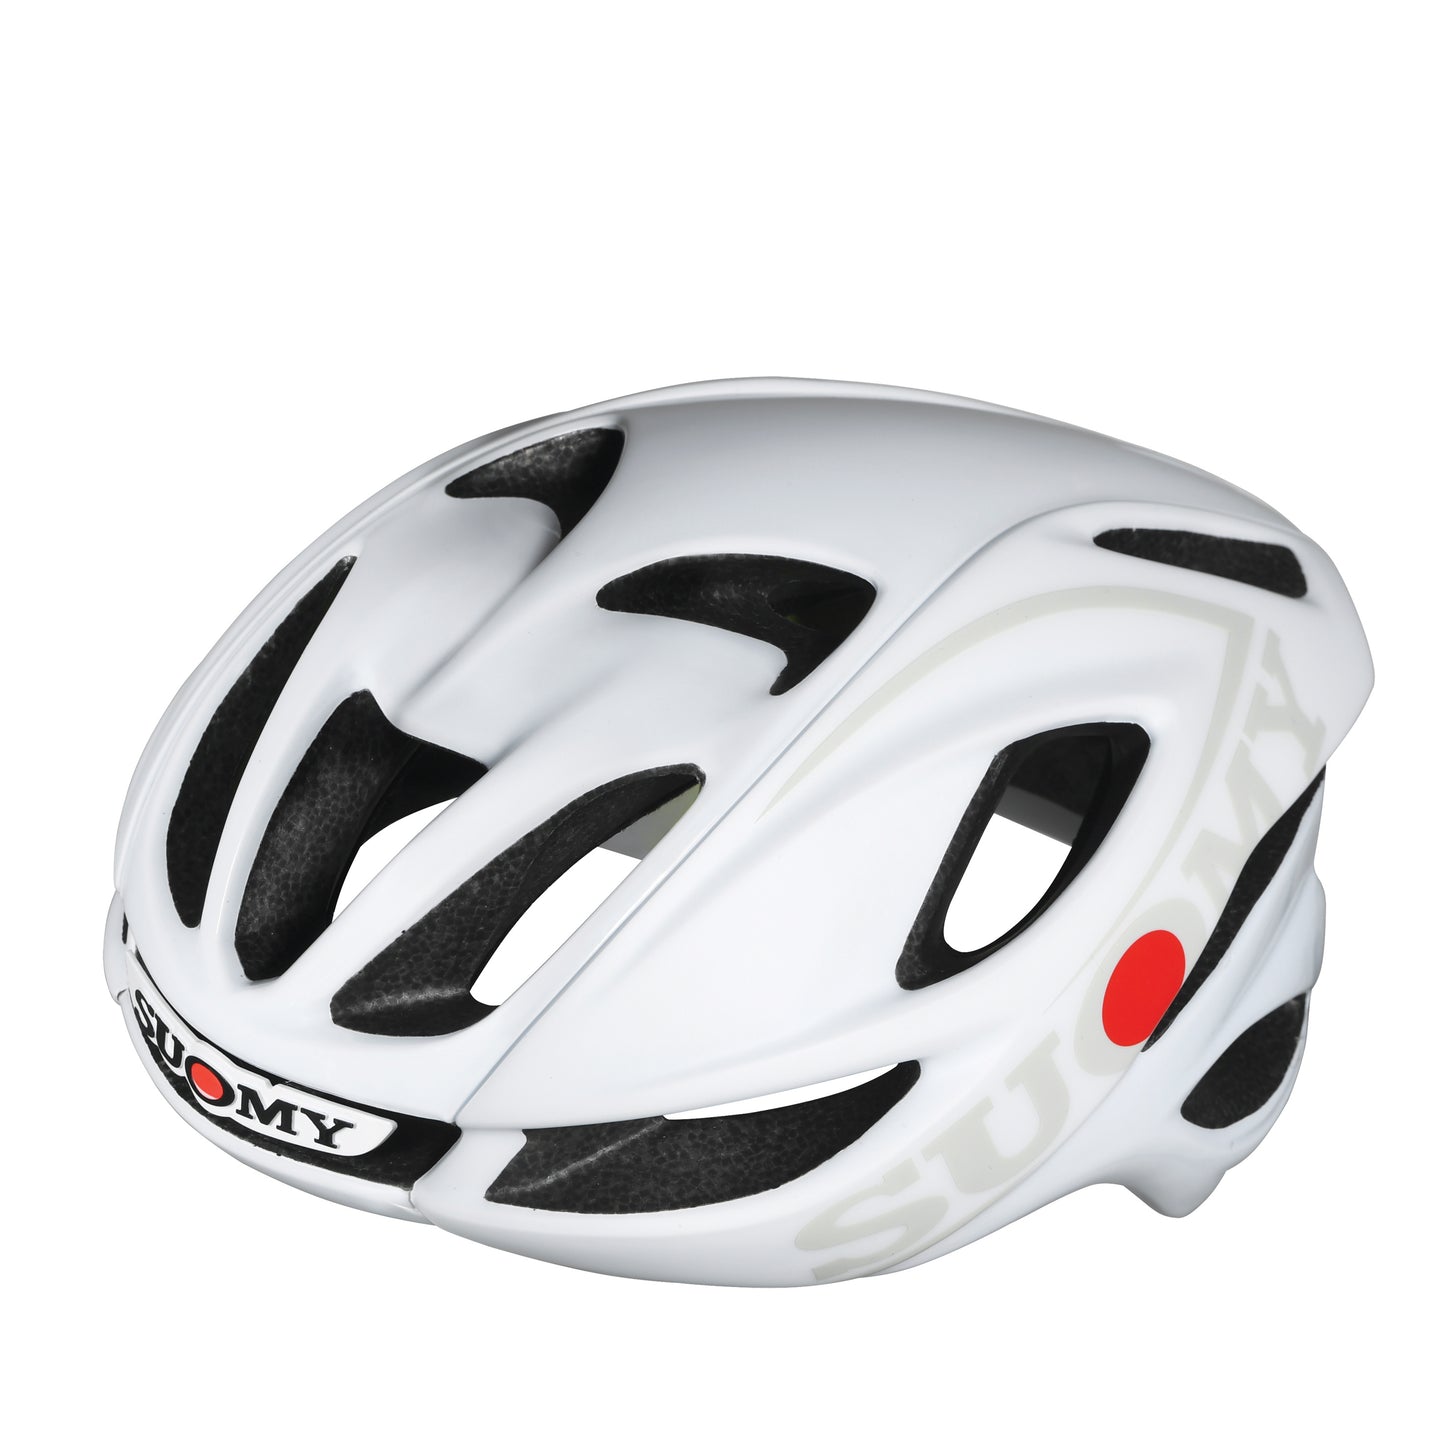 Helmet Suomy Glider Branded Smart Strap Version